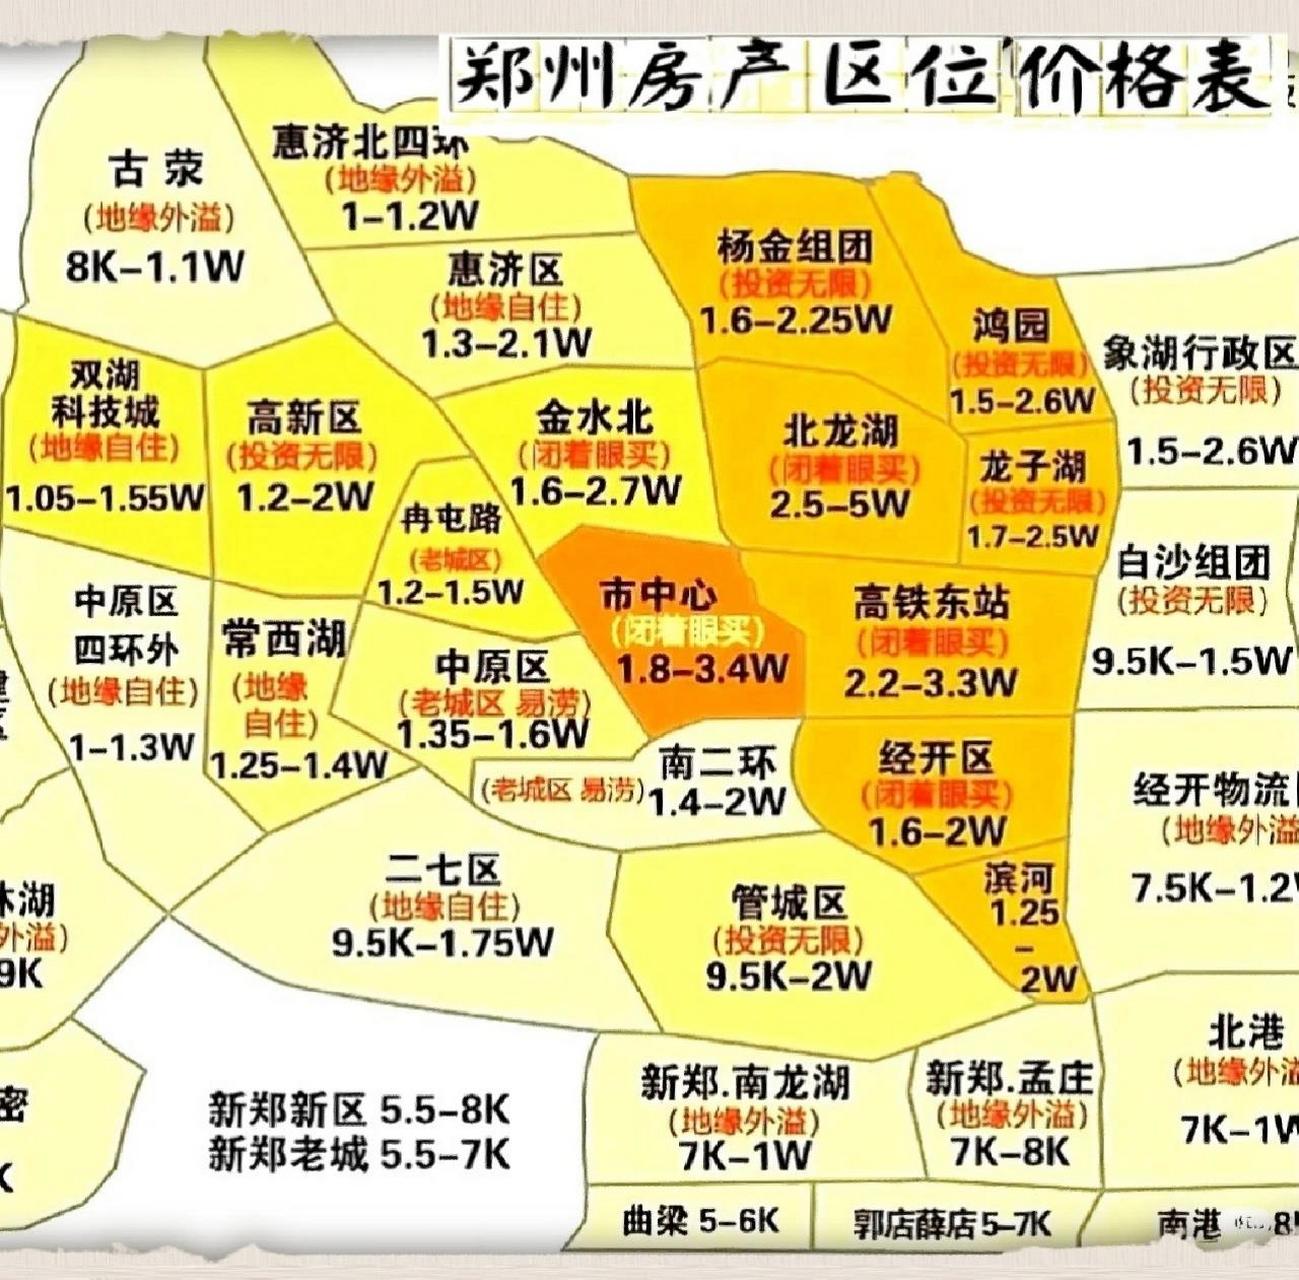 郑州买房攻略7515各区定位简评及房价区间 郑州买房,收藏好这张图